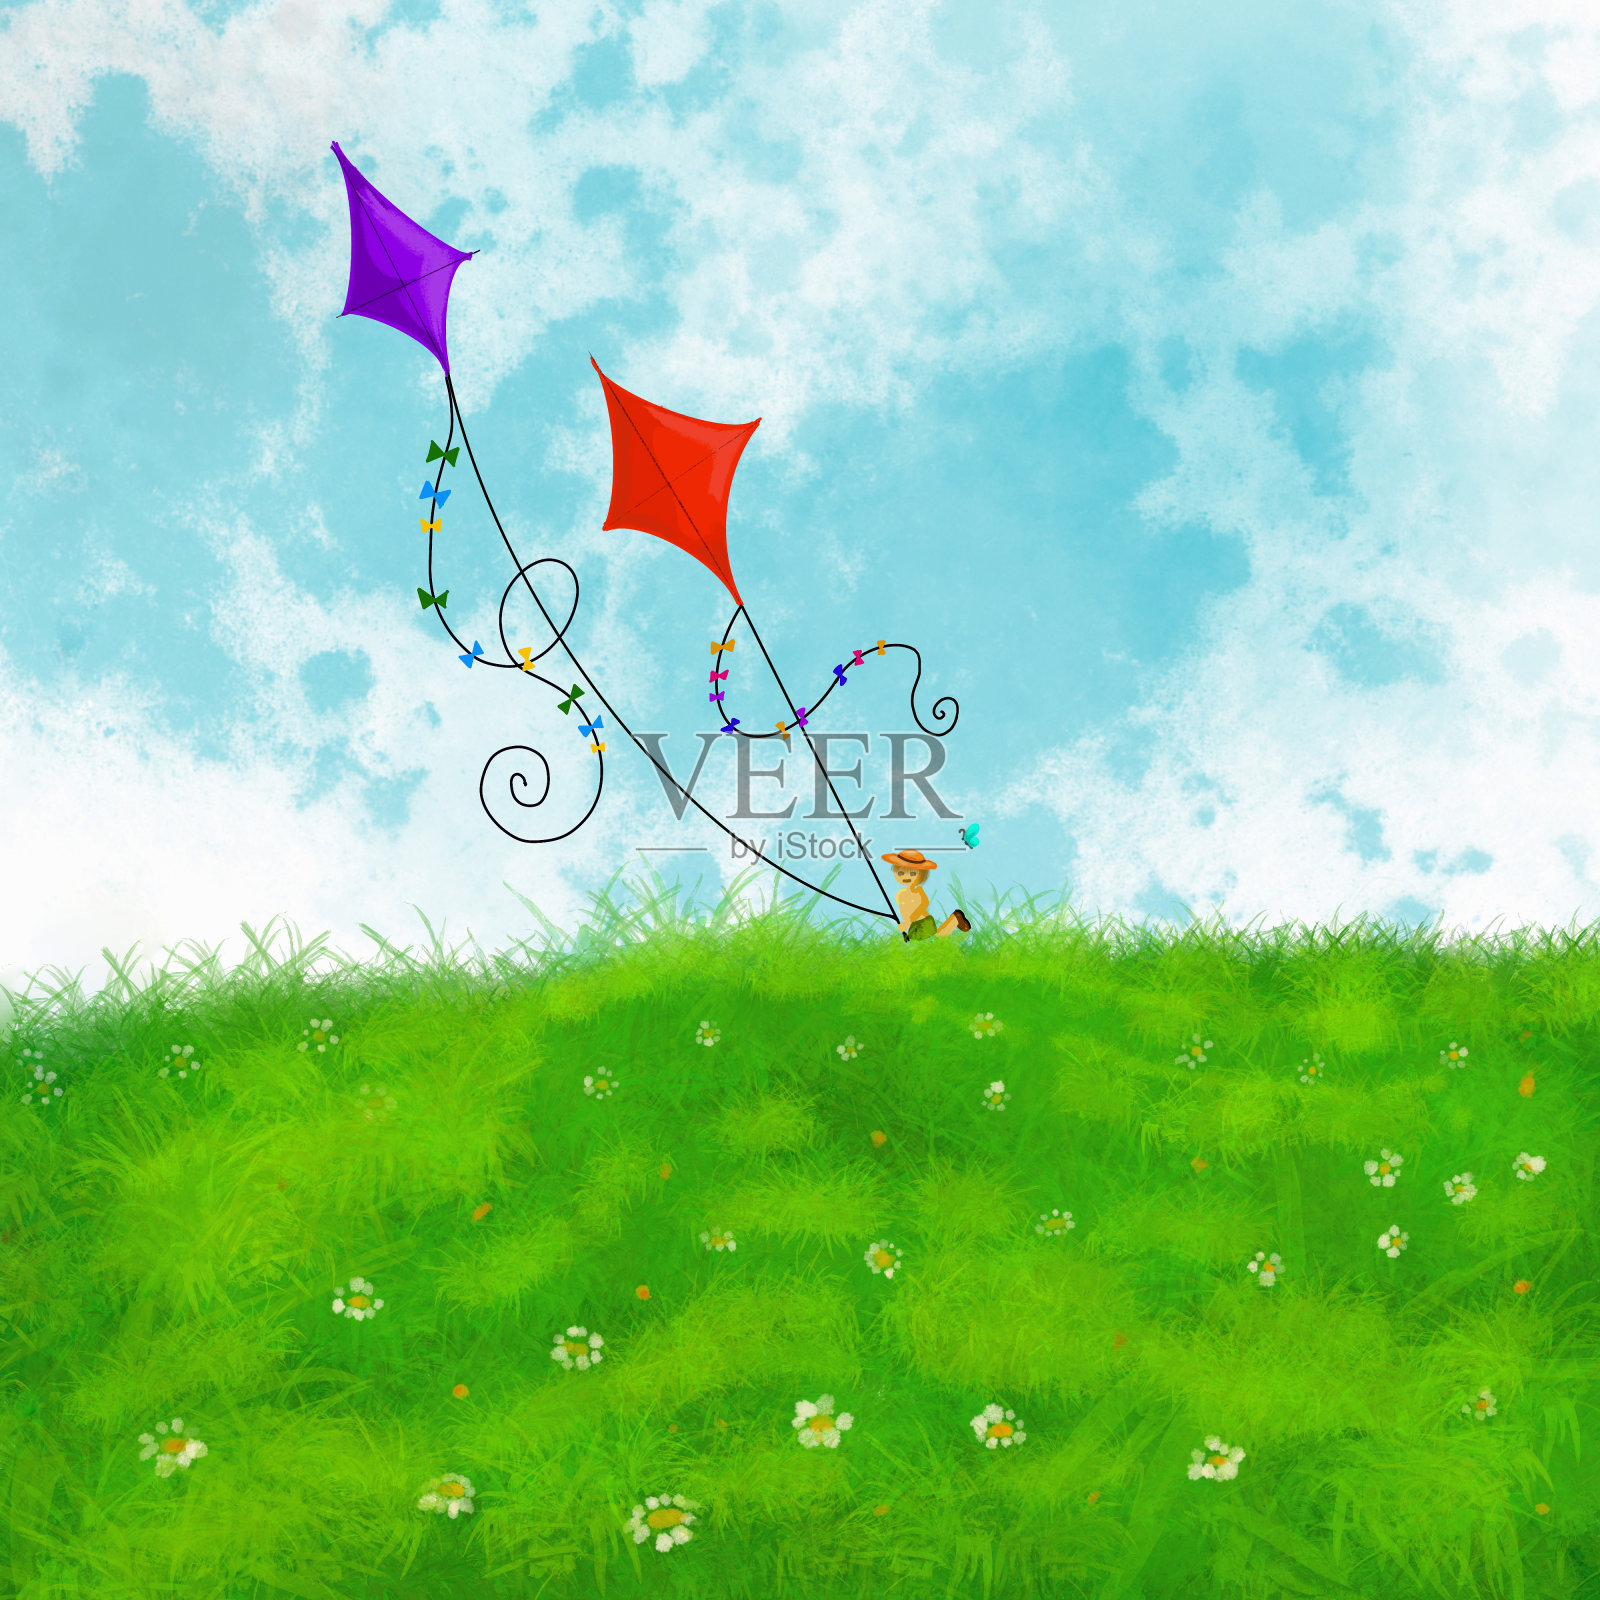 绿草如茵的风景里有两个小男孩牵着风筝。紫色和红色的风筝在空中飞舞。夏季插图与休闲活动。小男孩坐在草地上。插画图片素材